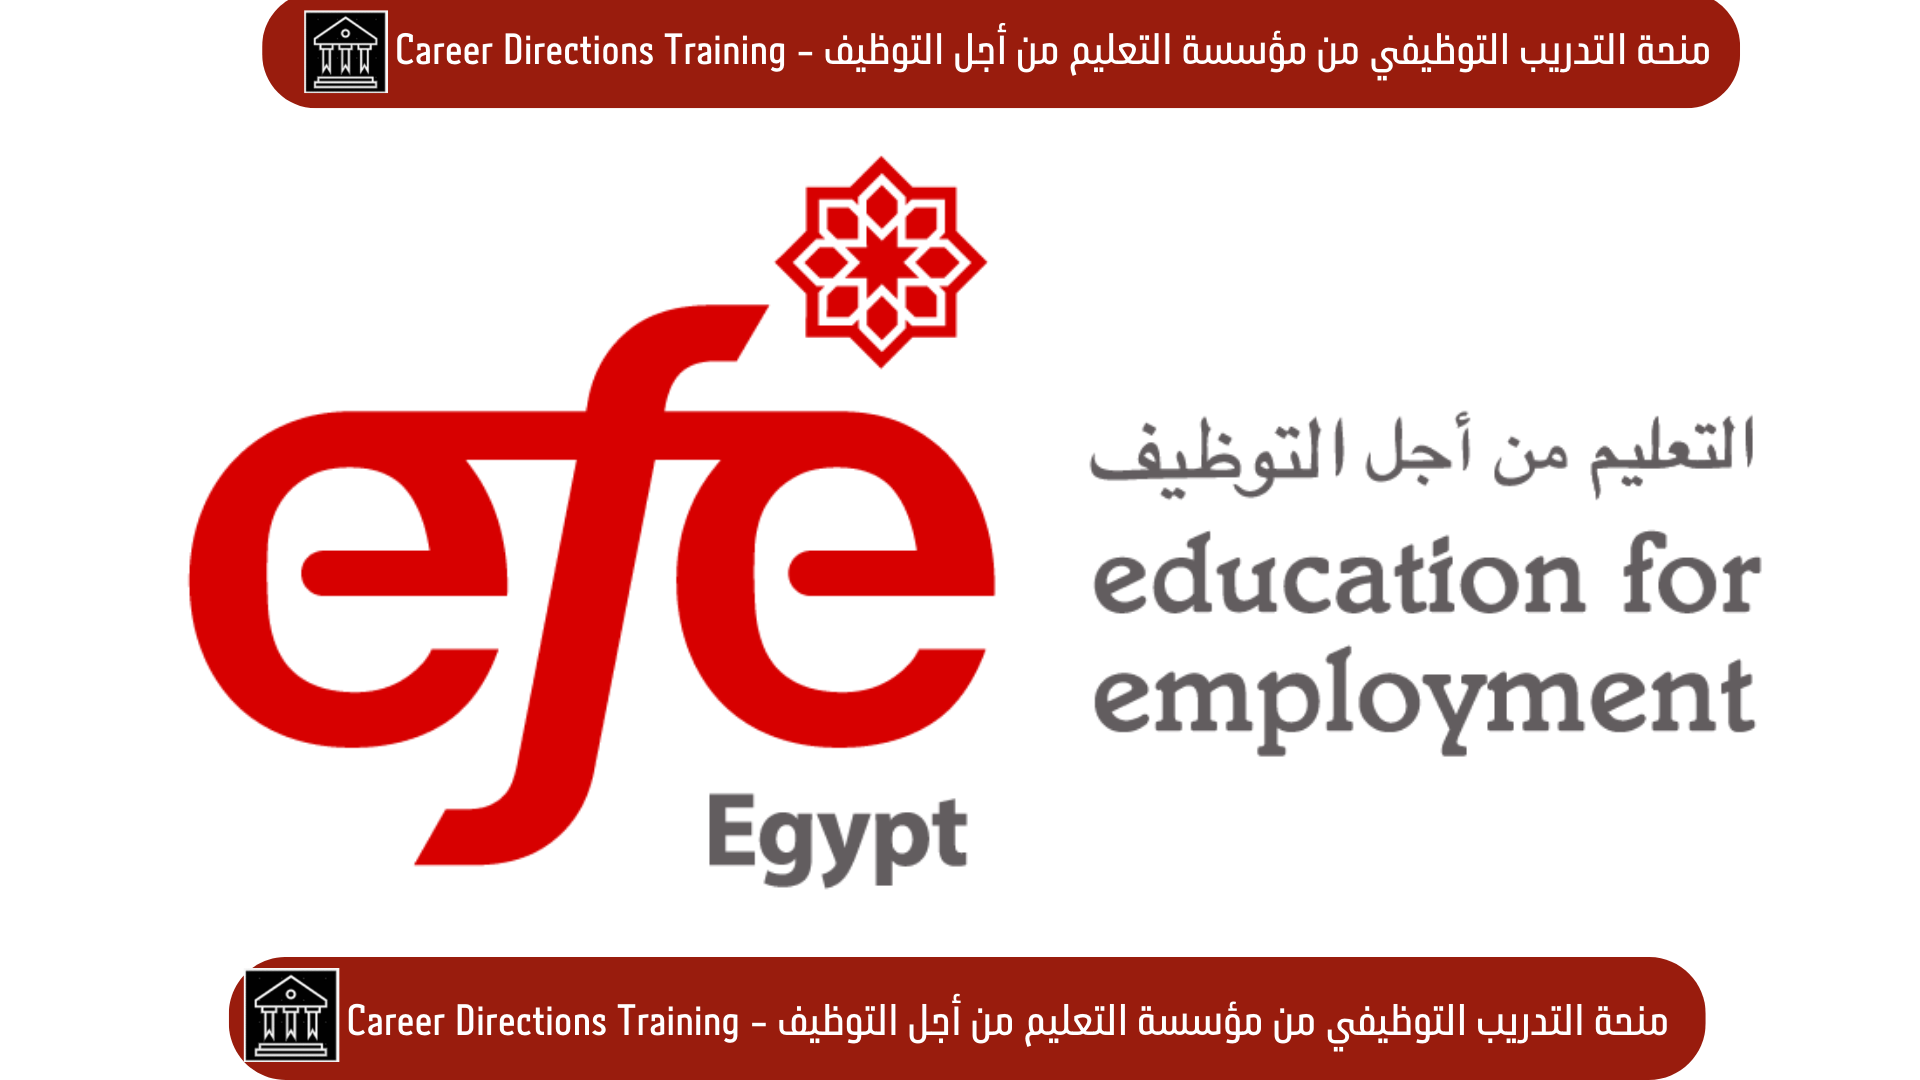 منحة التدريب الوظيفي من مؤسسة التعليم من أجل التوظيف - Career Directions Training